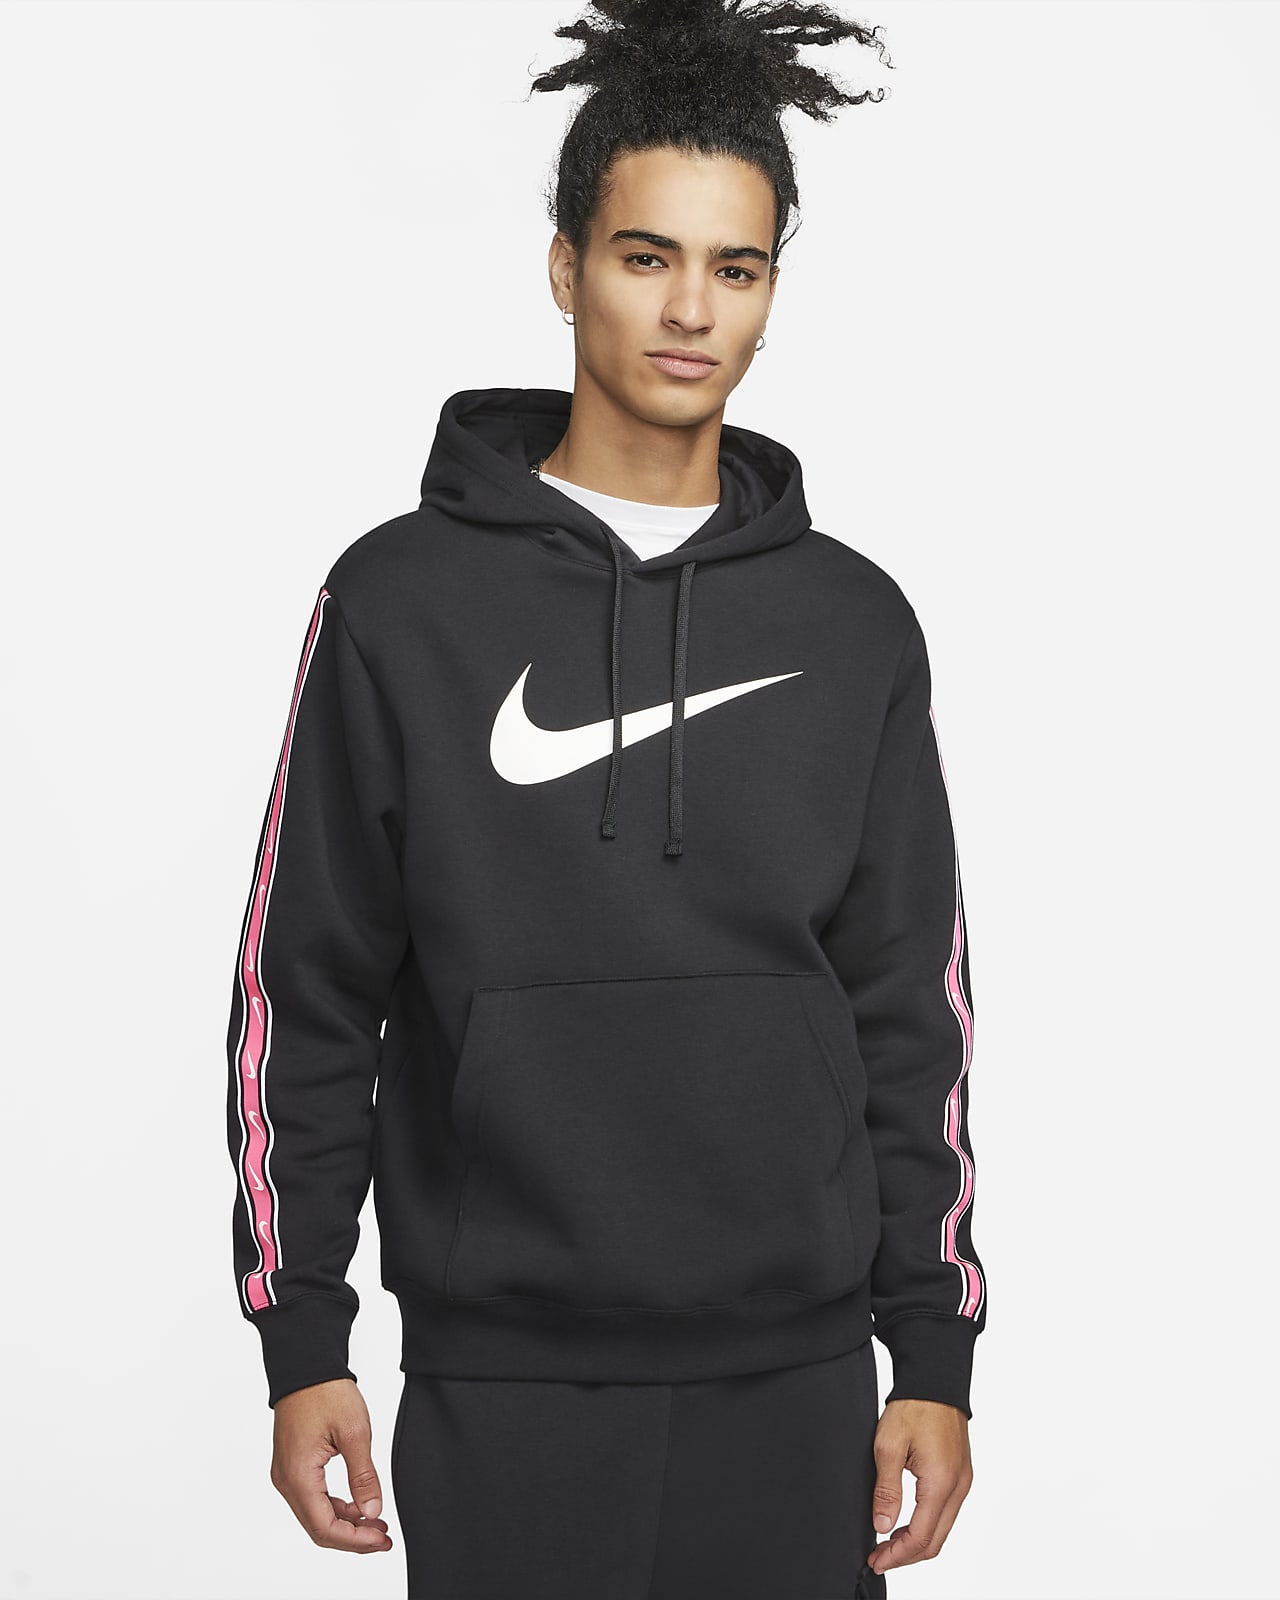 genetisch Polair Gewoon doen Nike Sportswear Repeat Men's Pullover Fleece Hoodie. Nike LU